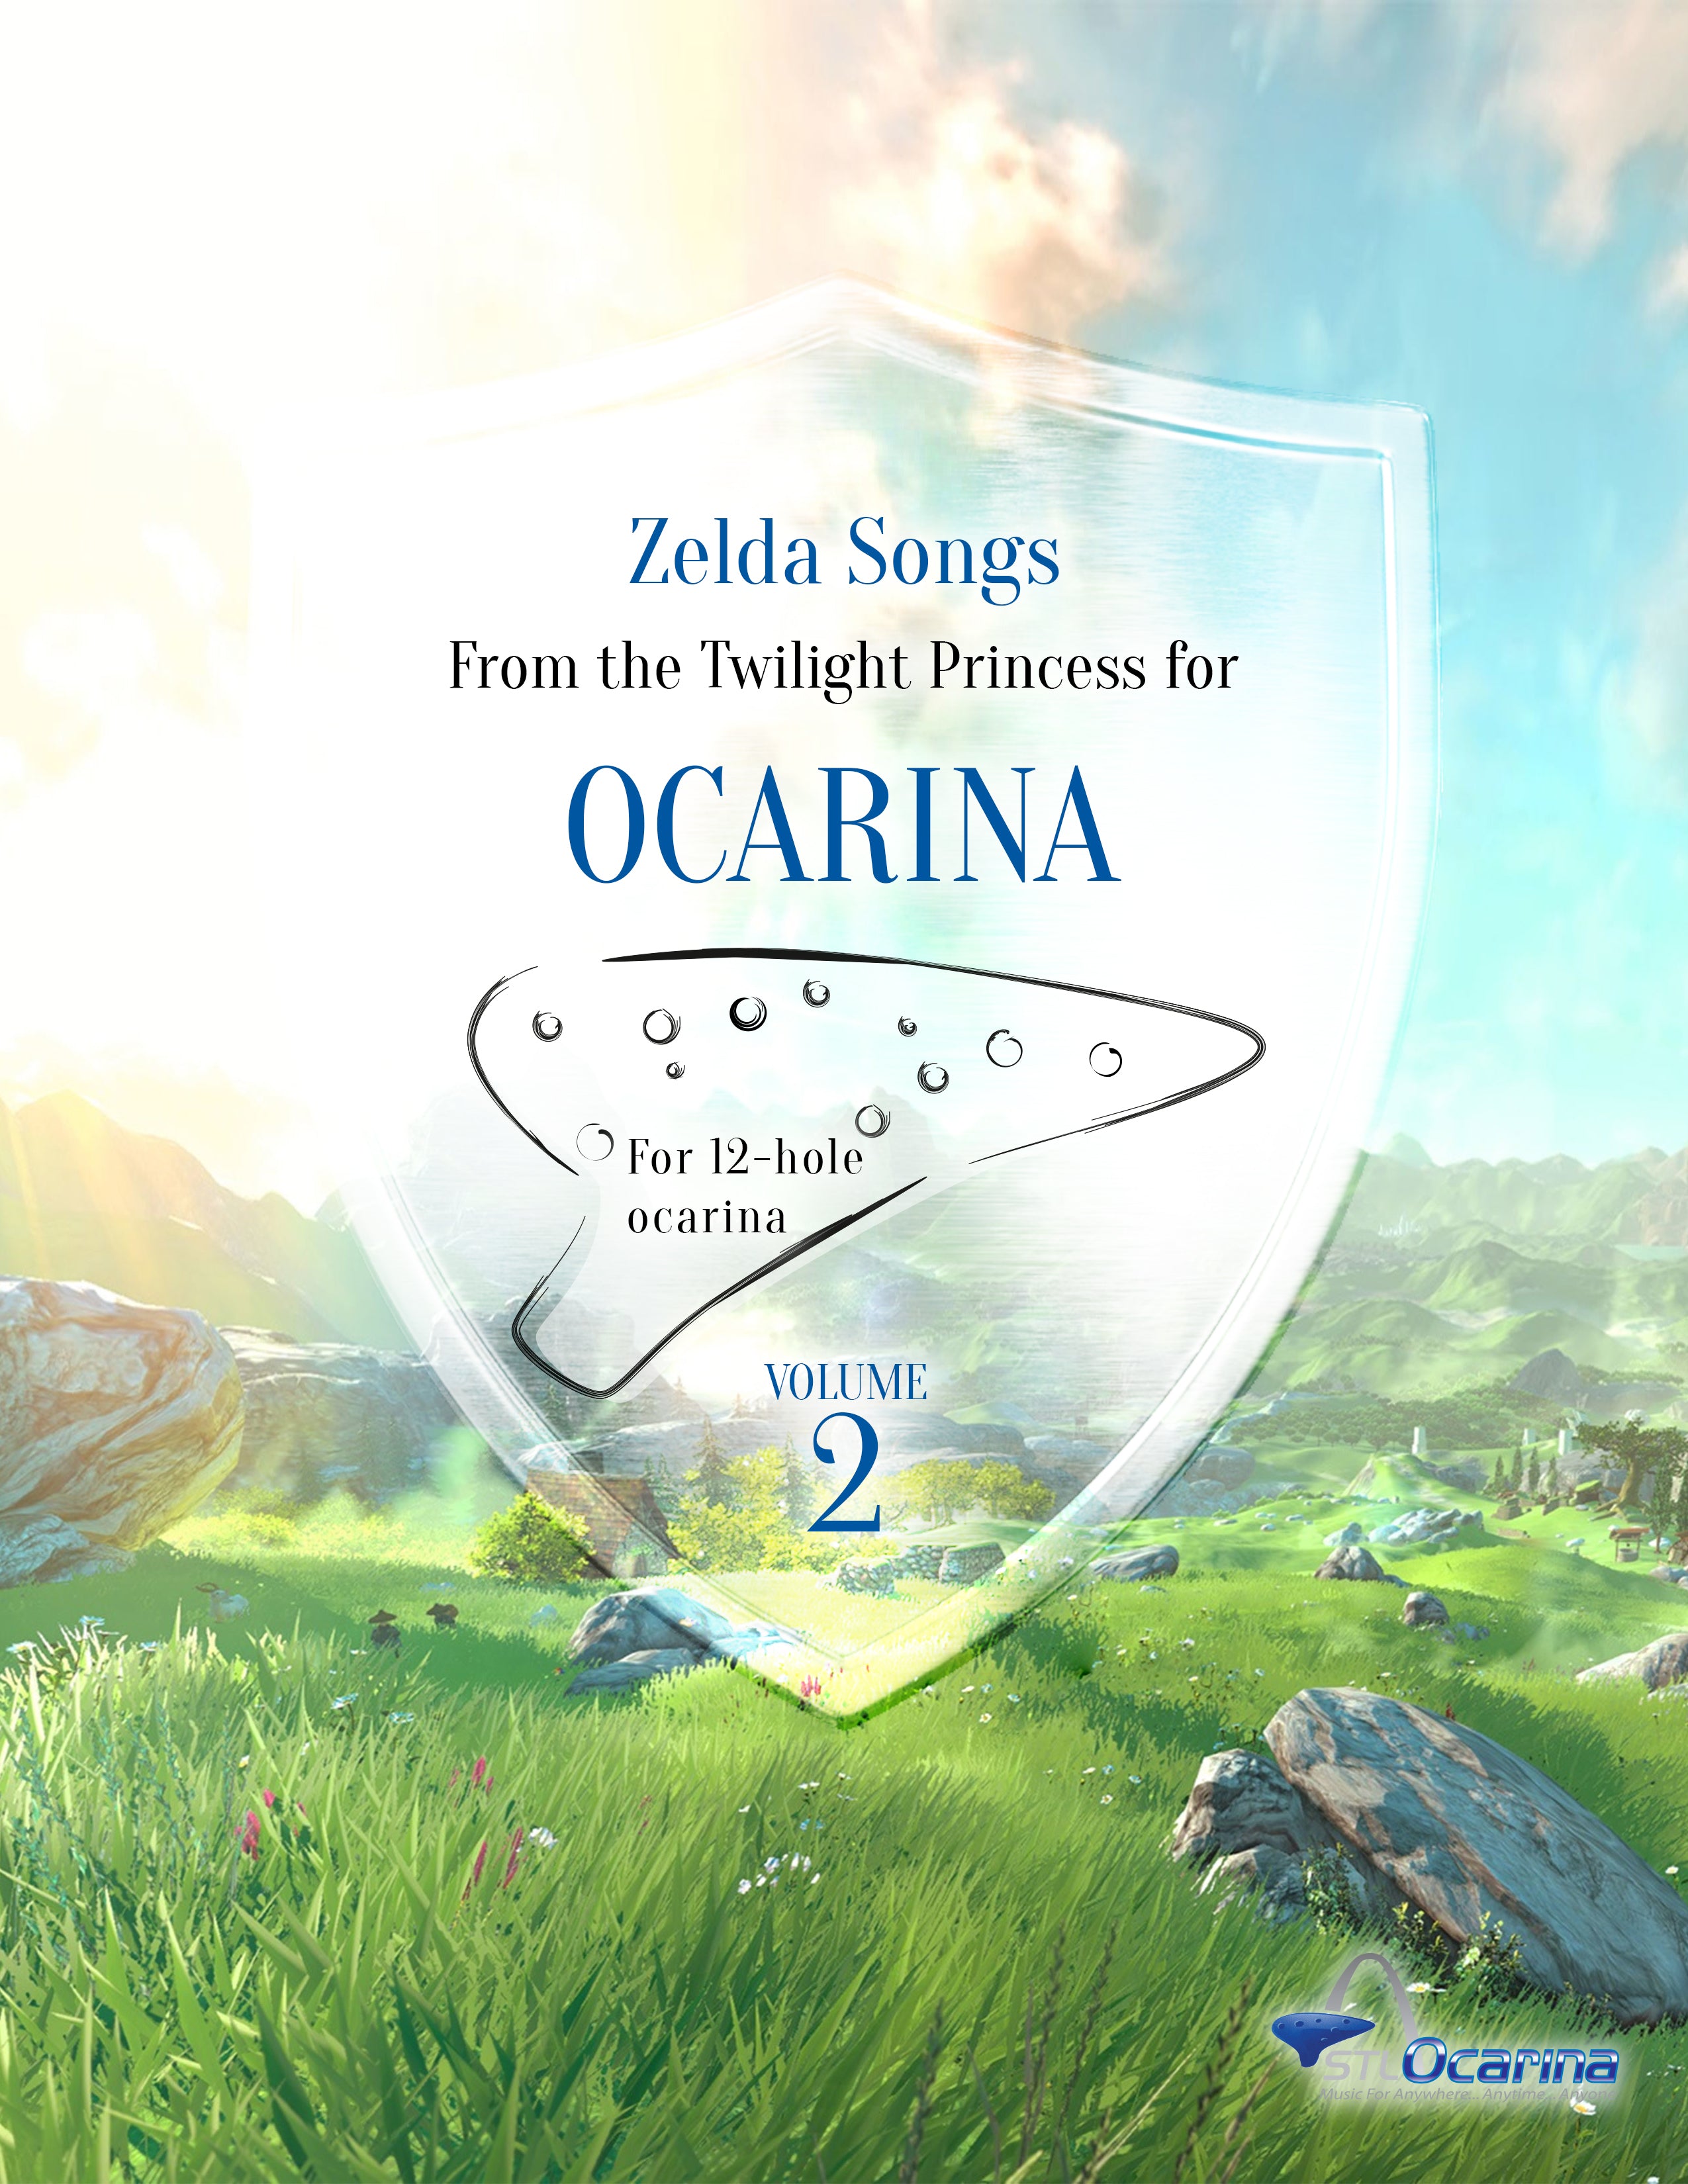 Legend of Zelda Standard Notation Songbook